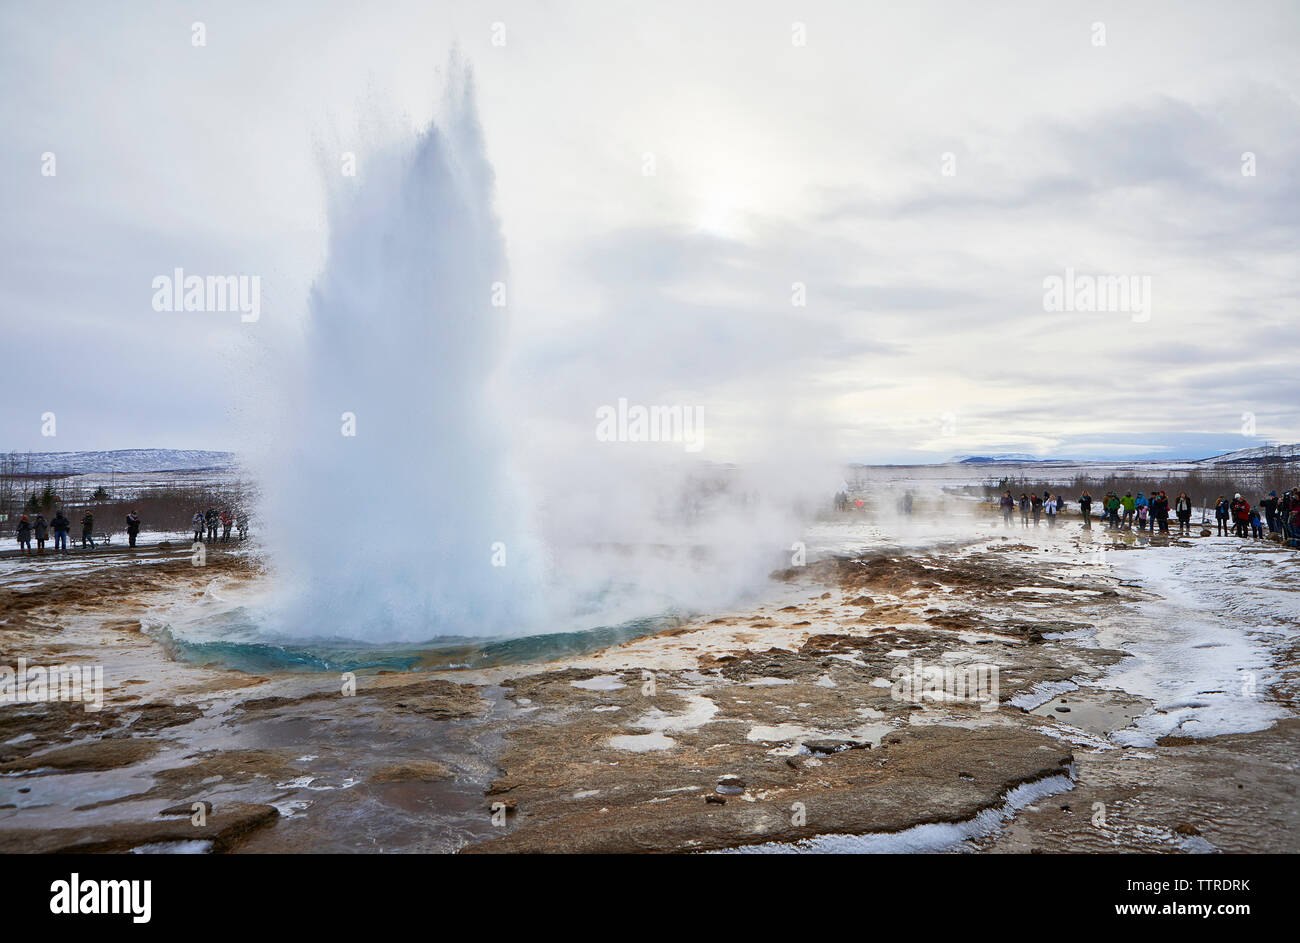 Les touristes à la recherche d'une projection d'eau à geyser contre ciel nuageux au cours de l'hiver Banque D'Images